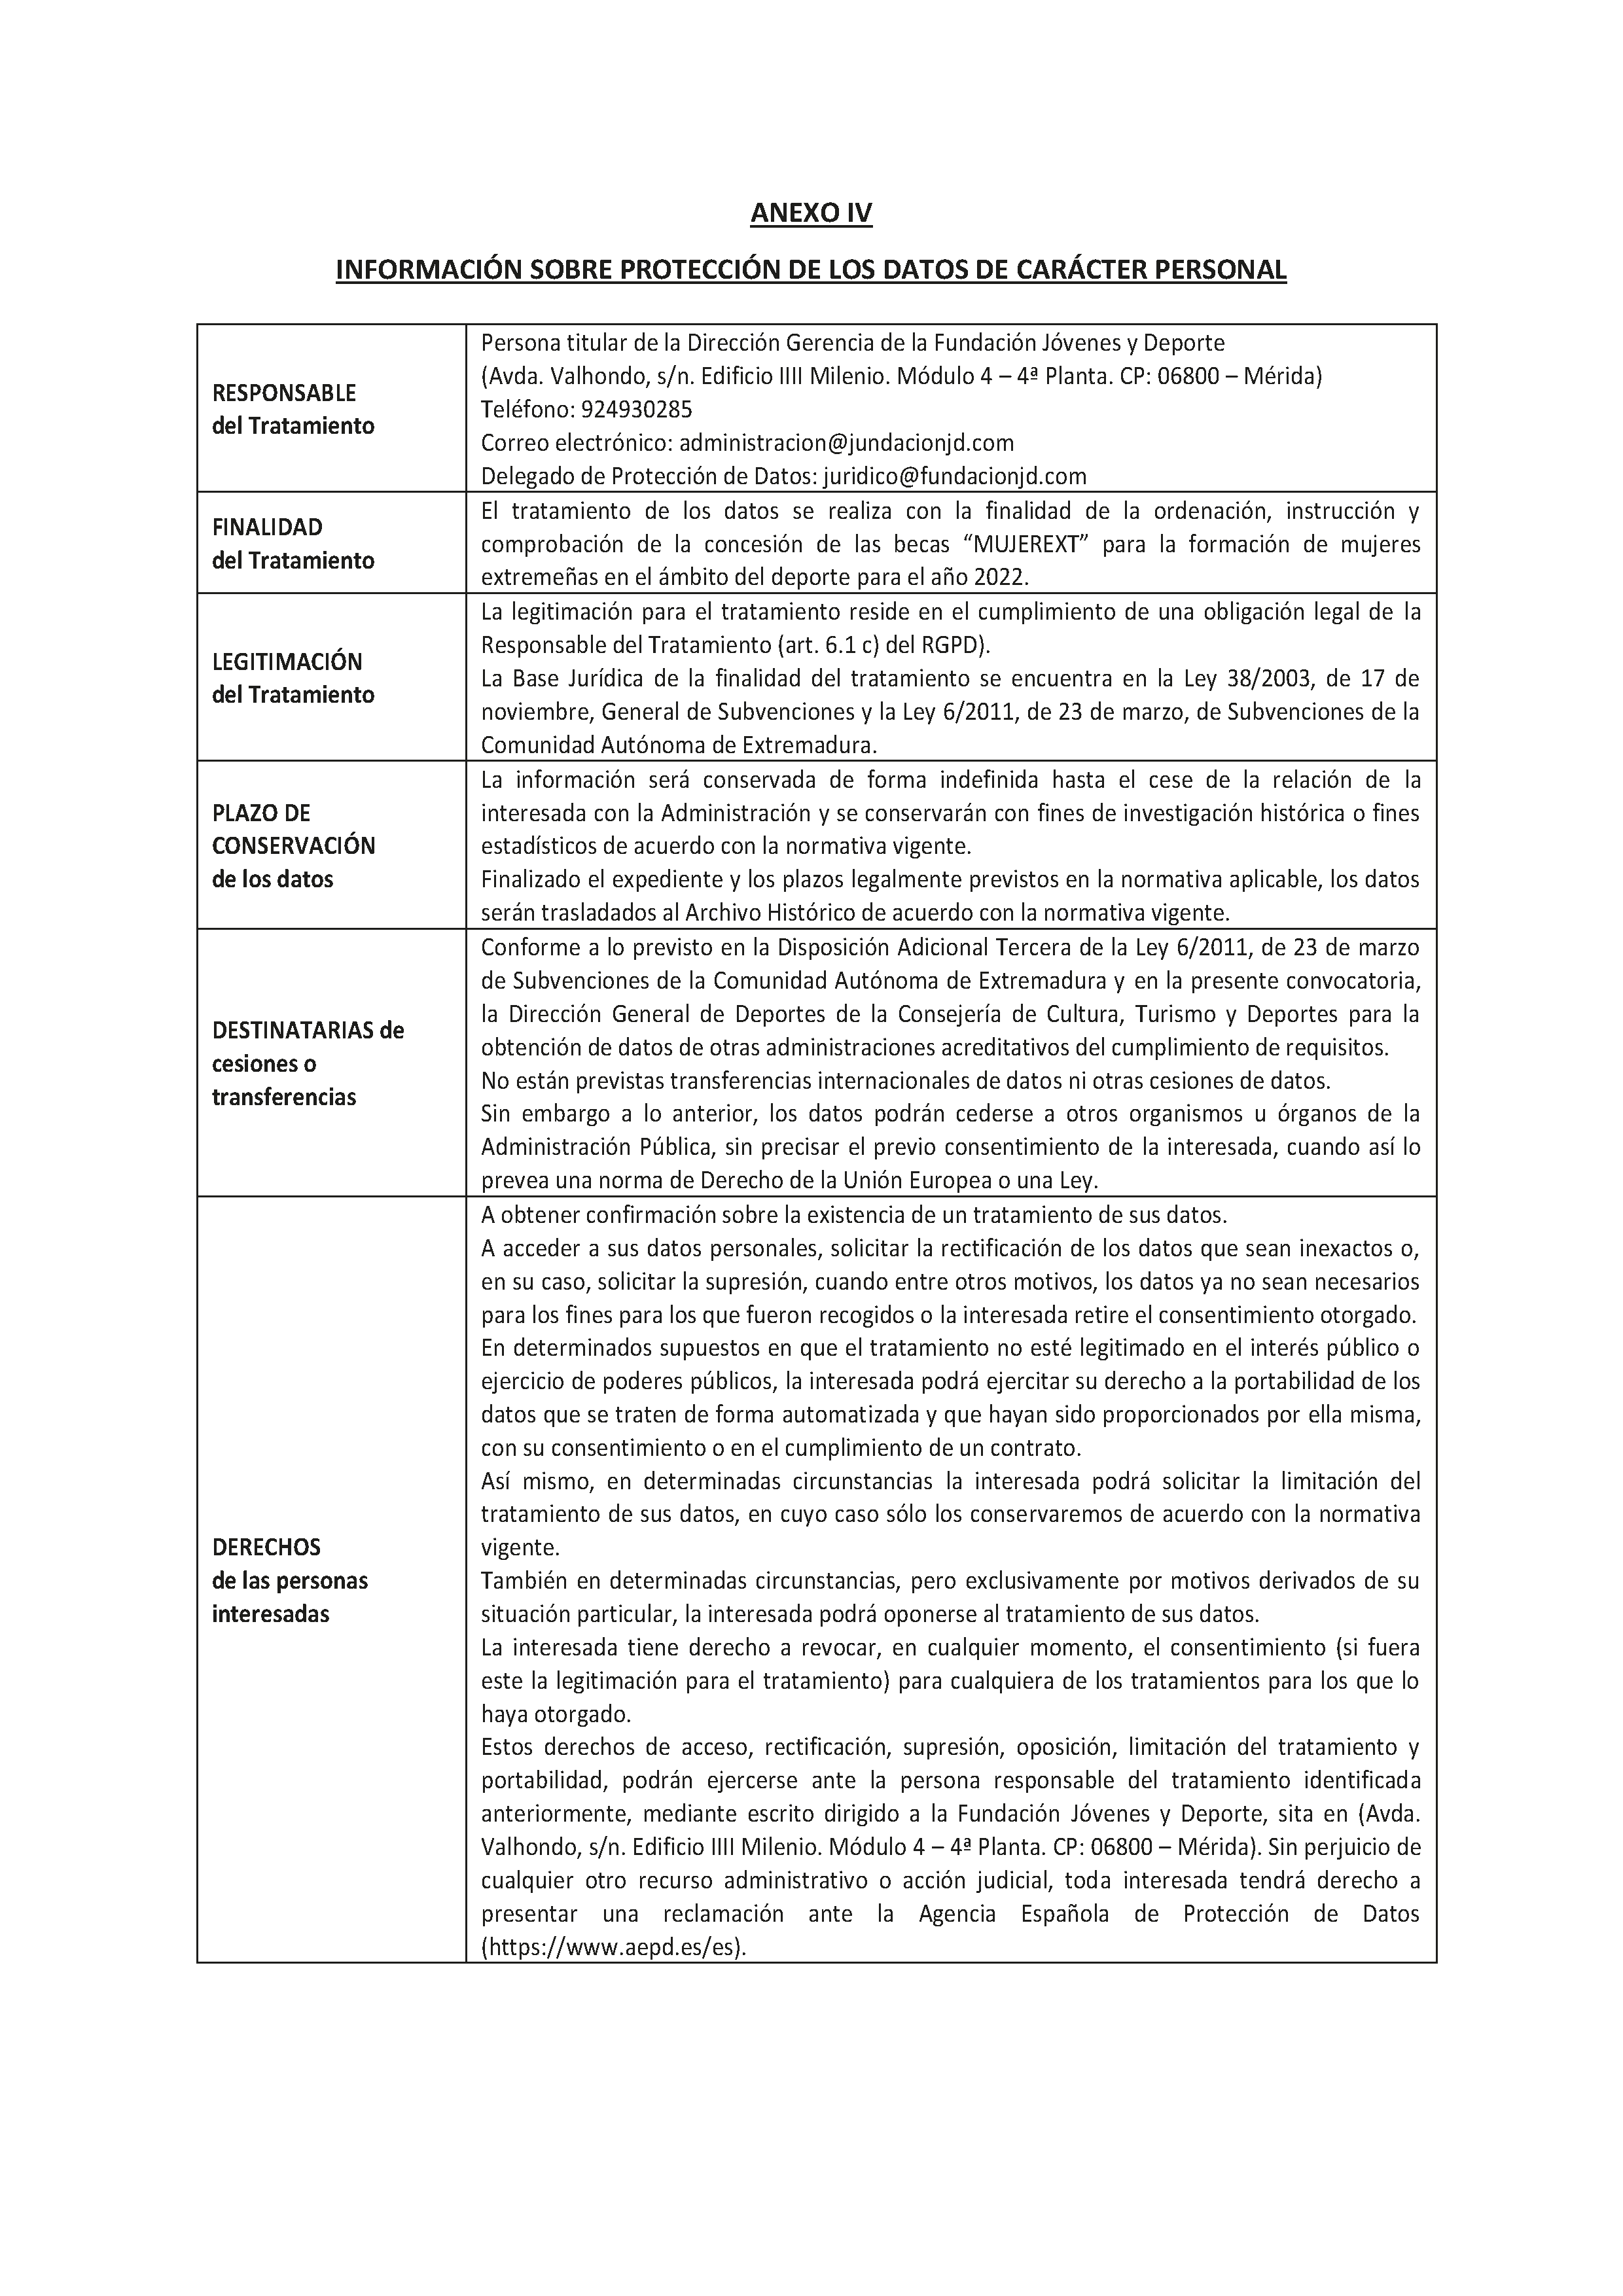 ANEXO IV INFORMACION SOBRE PROTECCION DE LOS DATOS DE CARACTER PERSONAL Pag 10